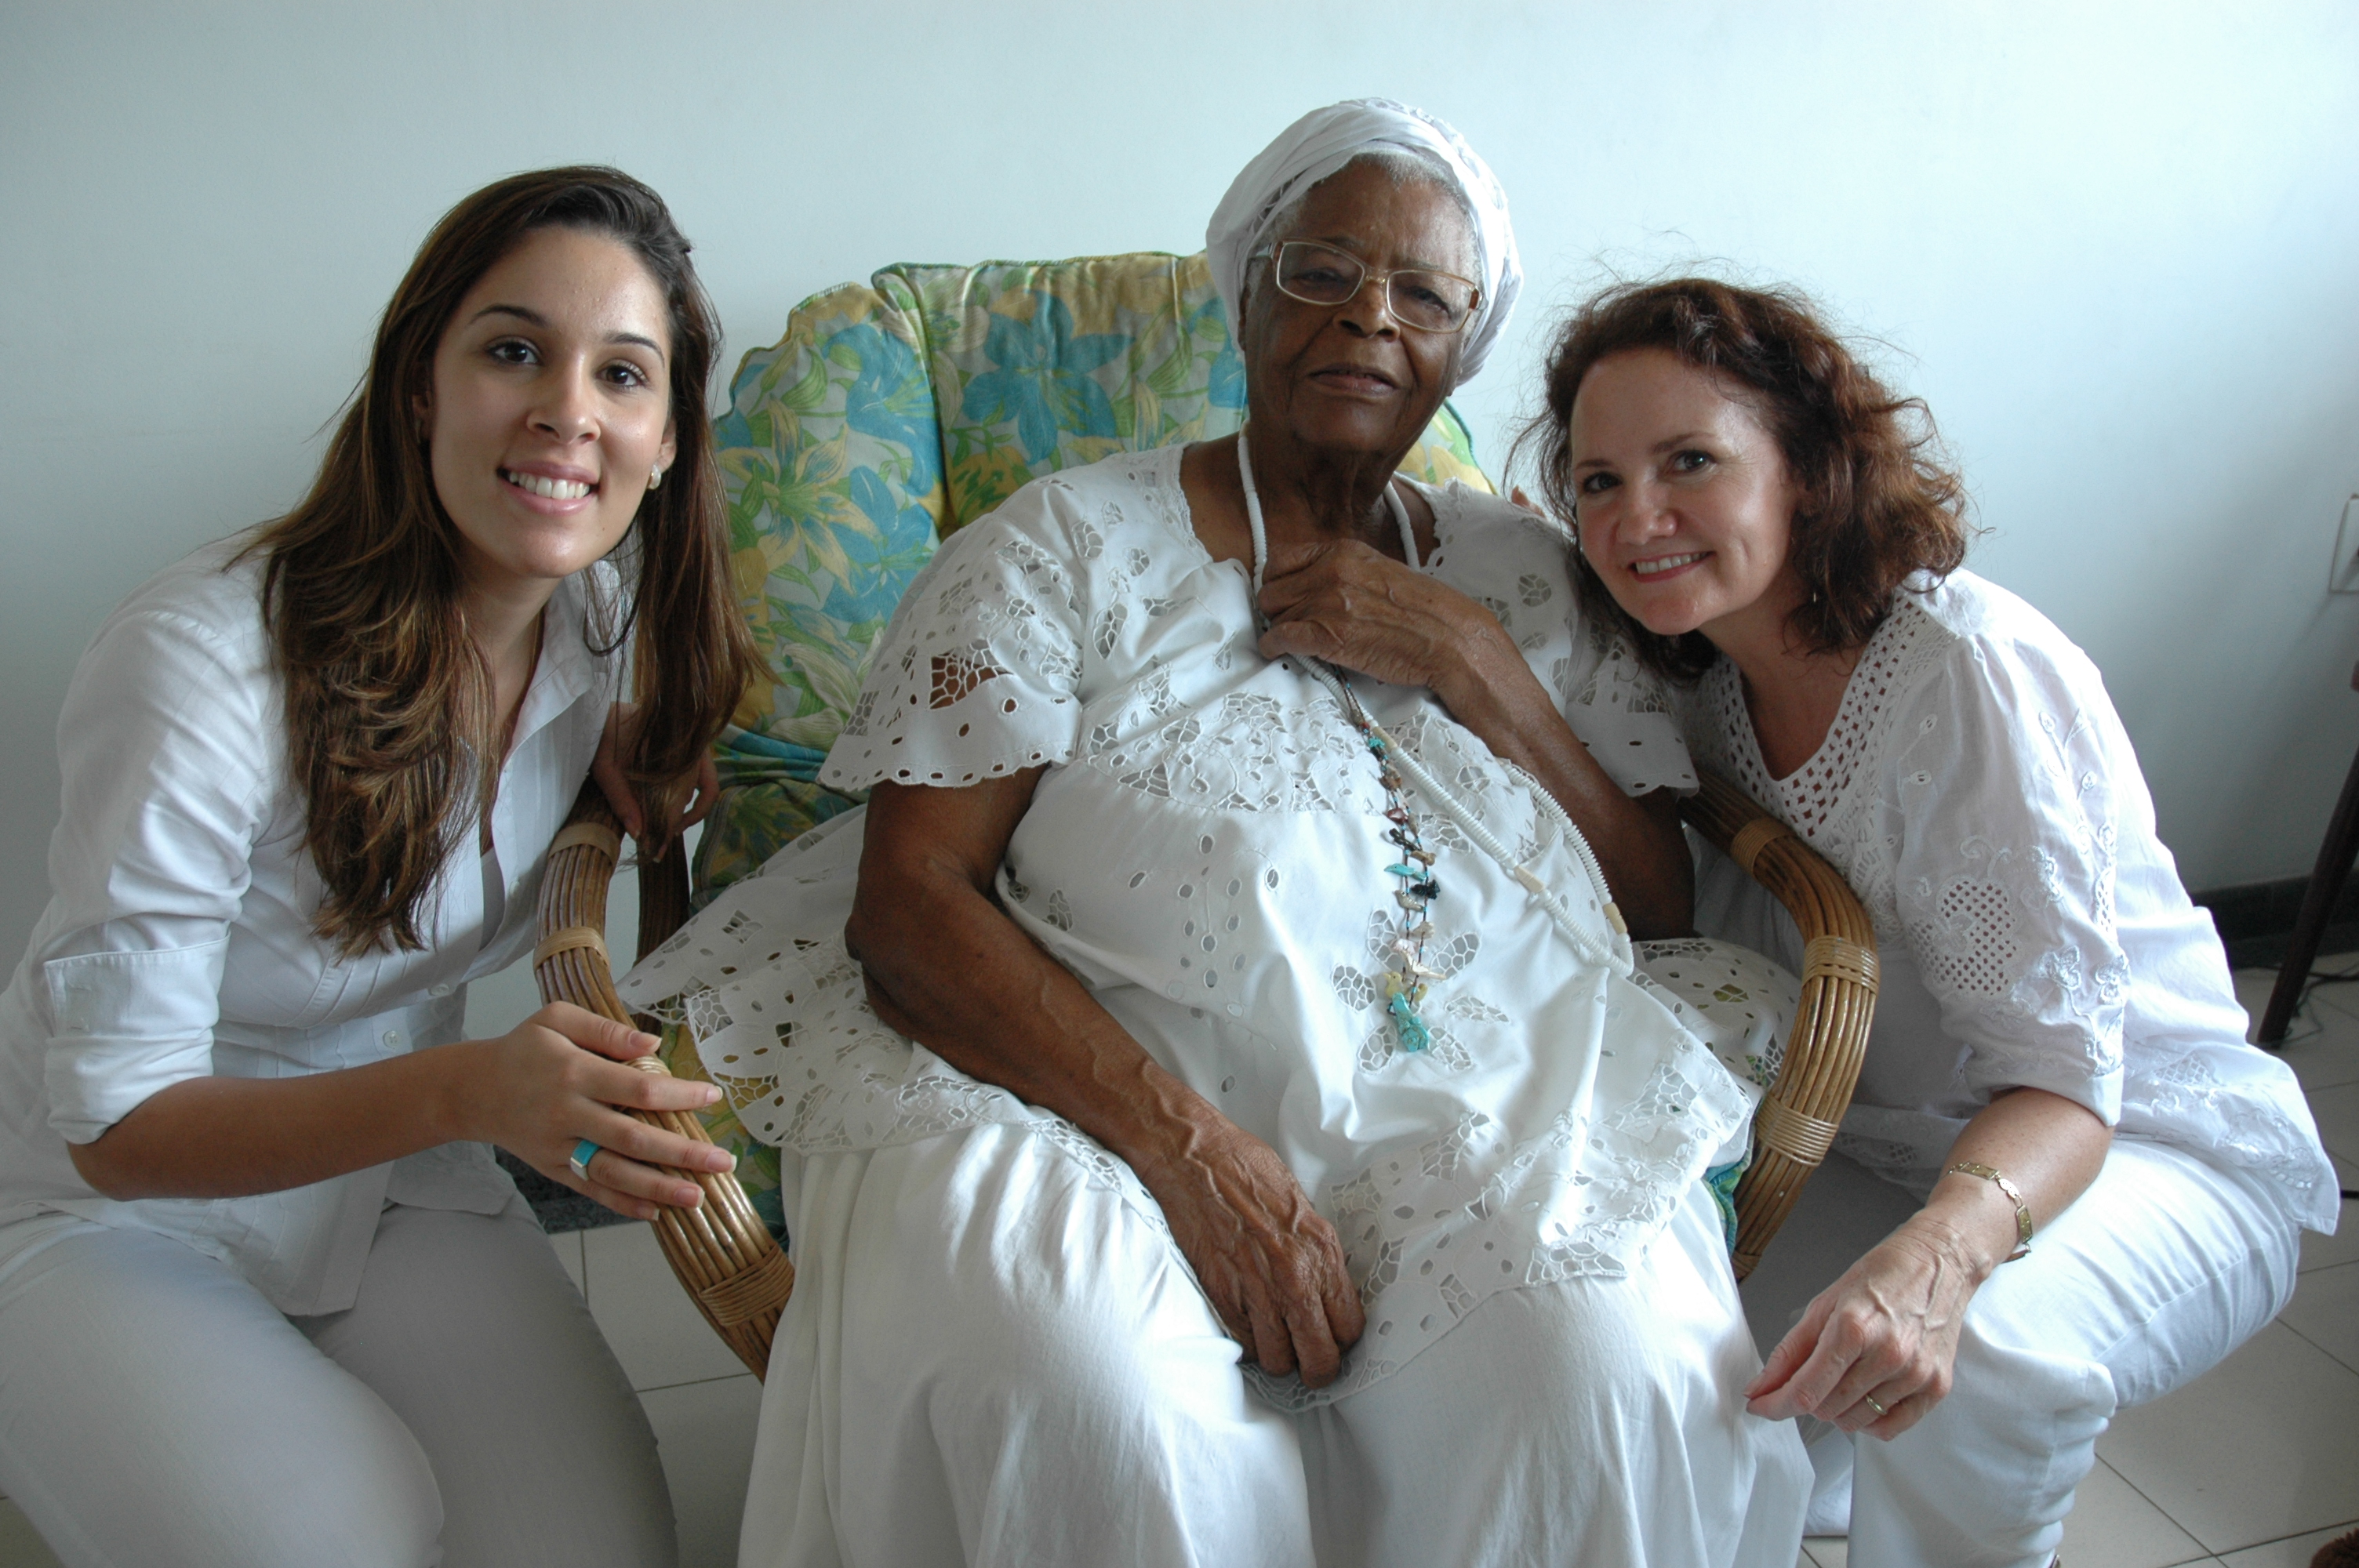 On location in Salvador, Bahia, Brazil with Mãe Stella de Oxóssi (center) and Sophia O'Sullivan